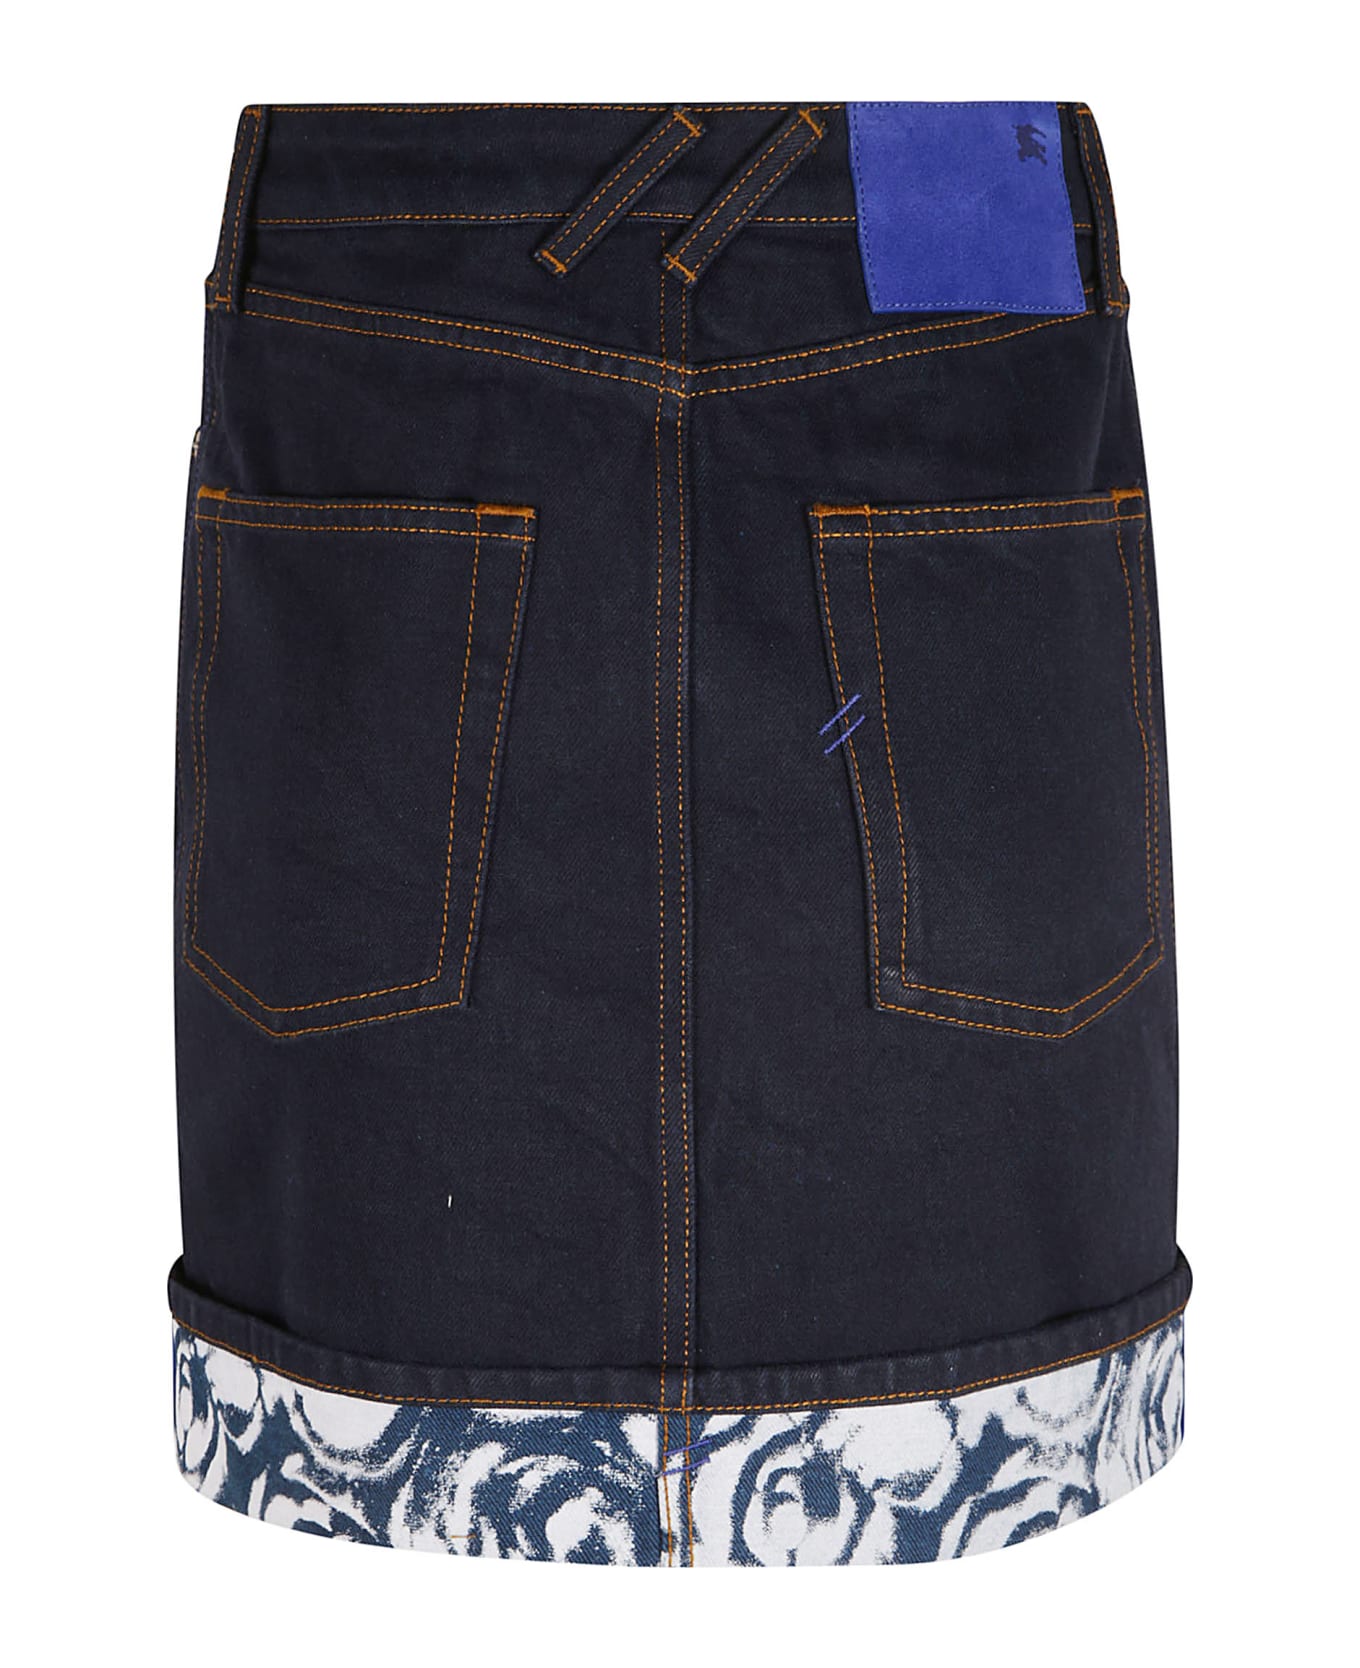 Burberry Four Pockets Denim Short Skirt - Indigo Blue